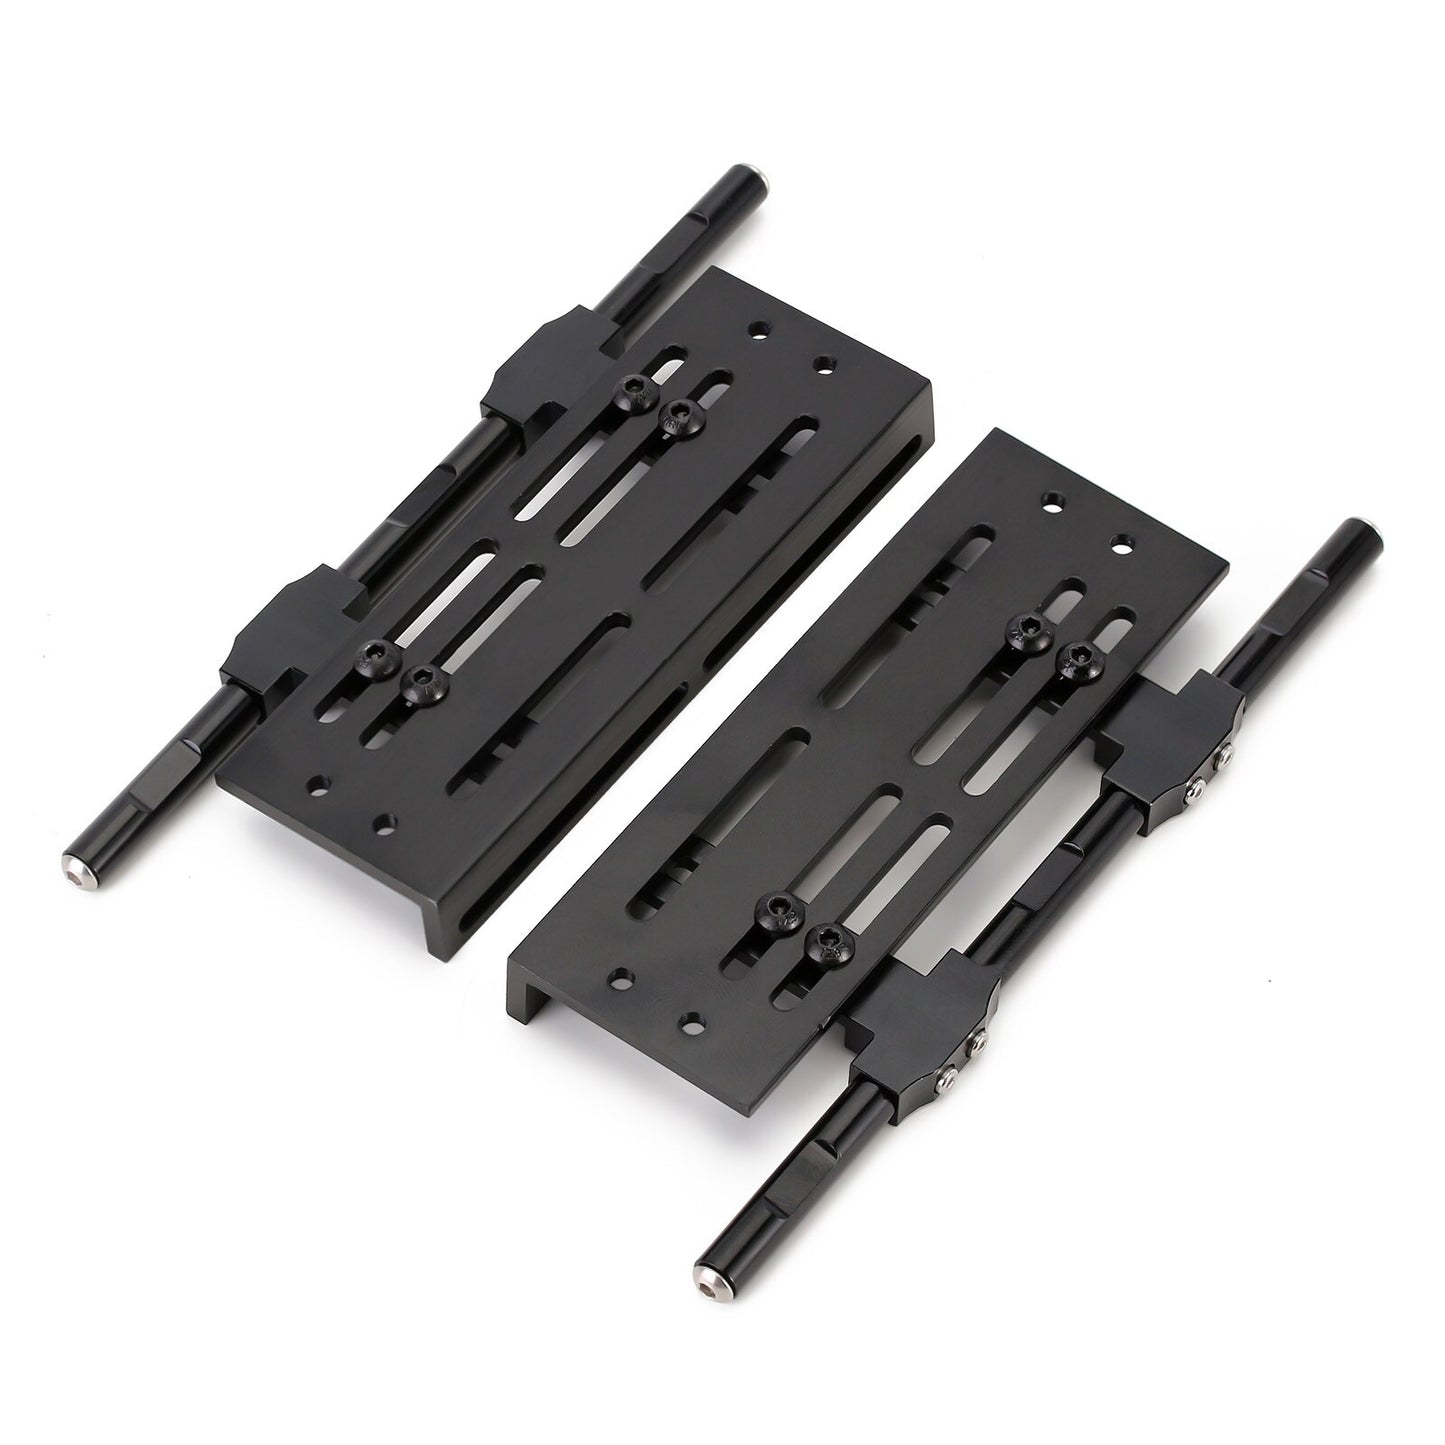 INJORA 2PCS Rock Sliders Metal Pedal for 1:10 RC Crawler Car Axial SCX10 90046 TRX4 Upgrade Parts